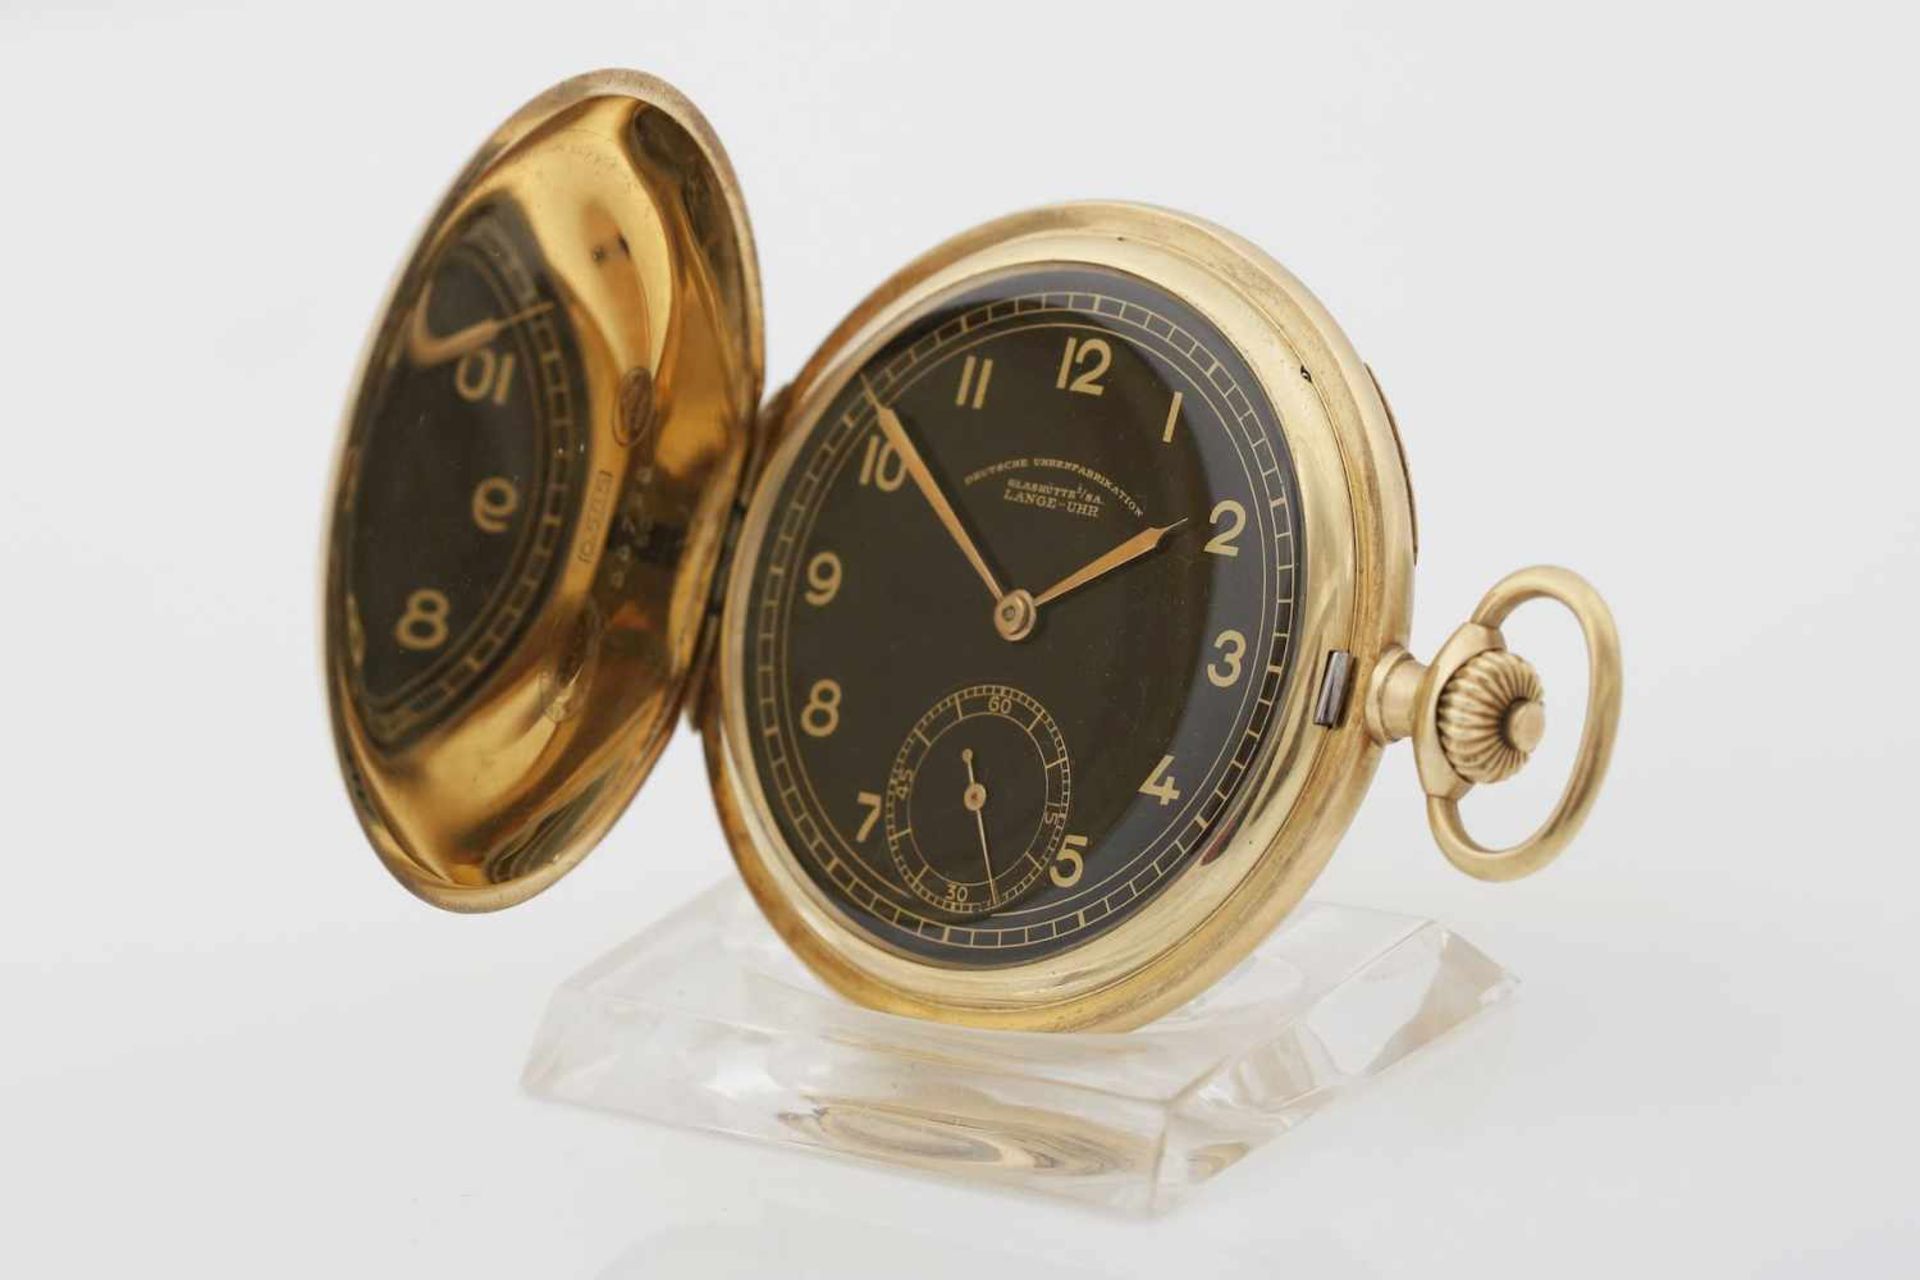 DUF Savonette Taschenuhr, ¨Lange-Uhr¨, Glashütte i.S.585er Goldgehäuse (3 Deckel Gold), glatte,